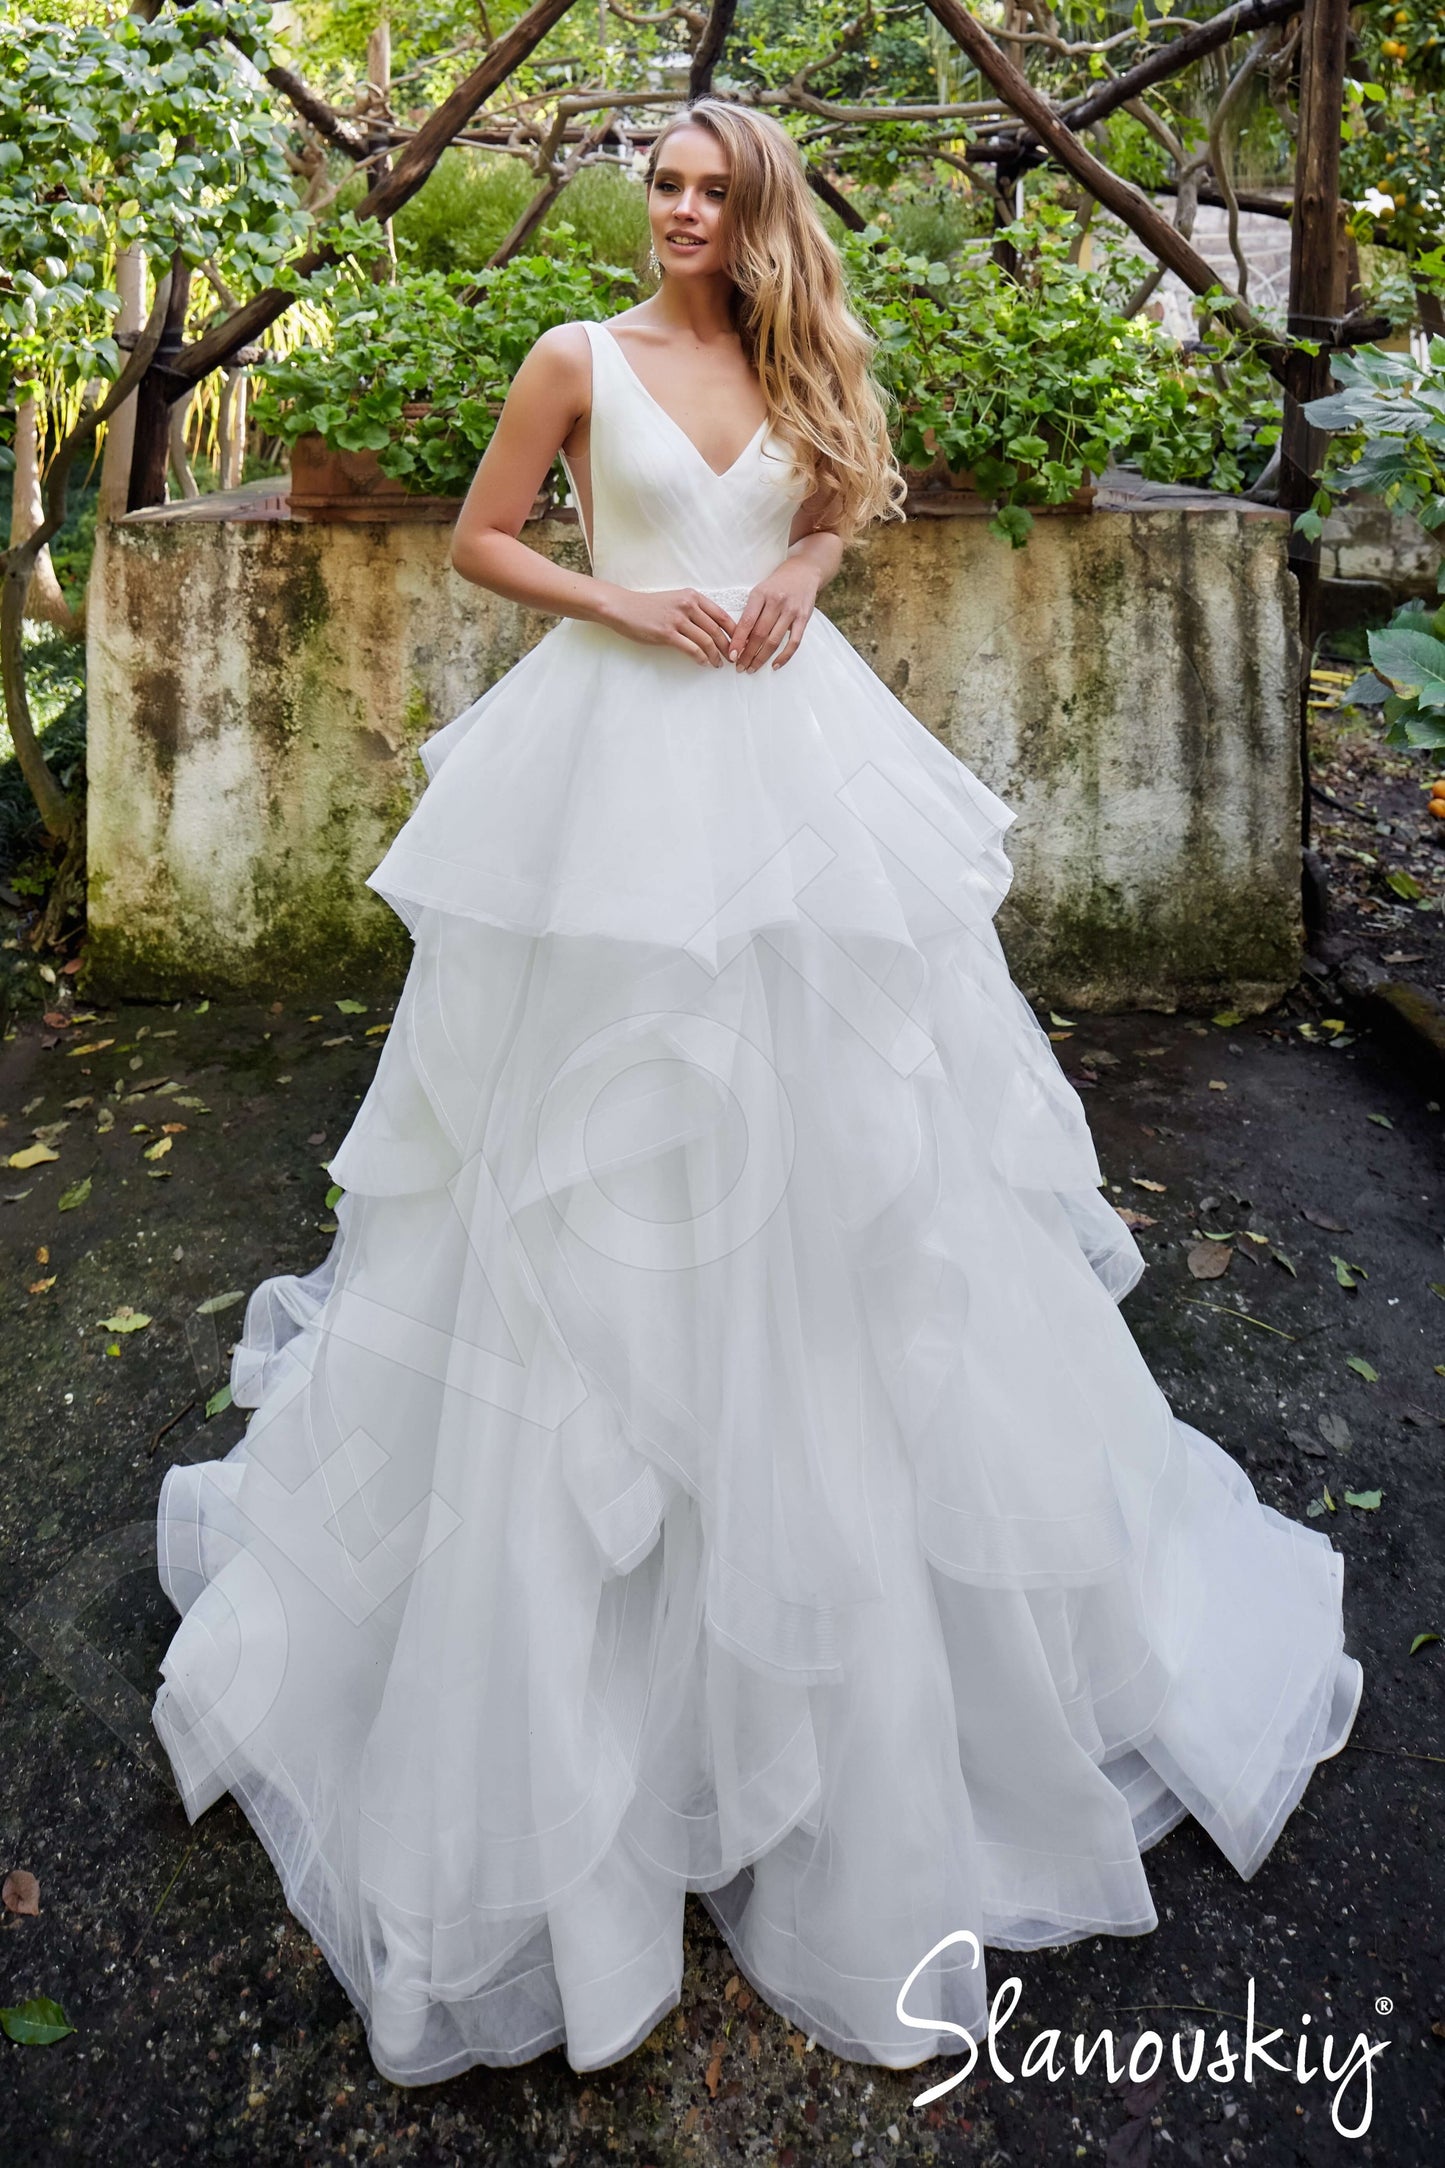 Asta Open back Princess/Ball Gown Sleeveless Wedding Dress 6